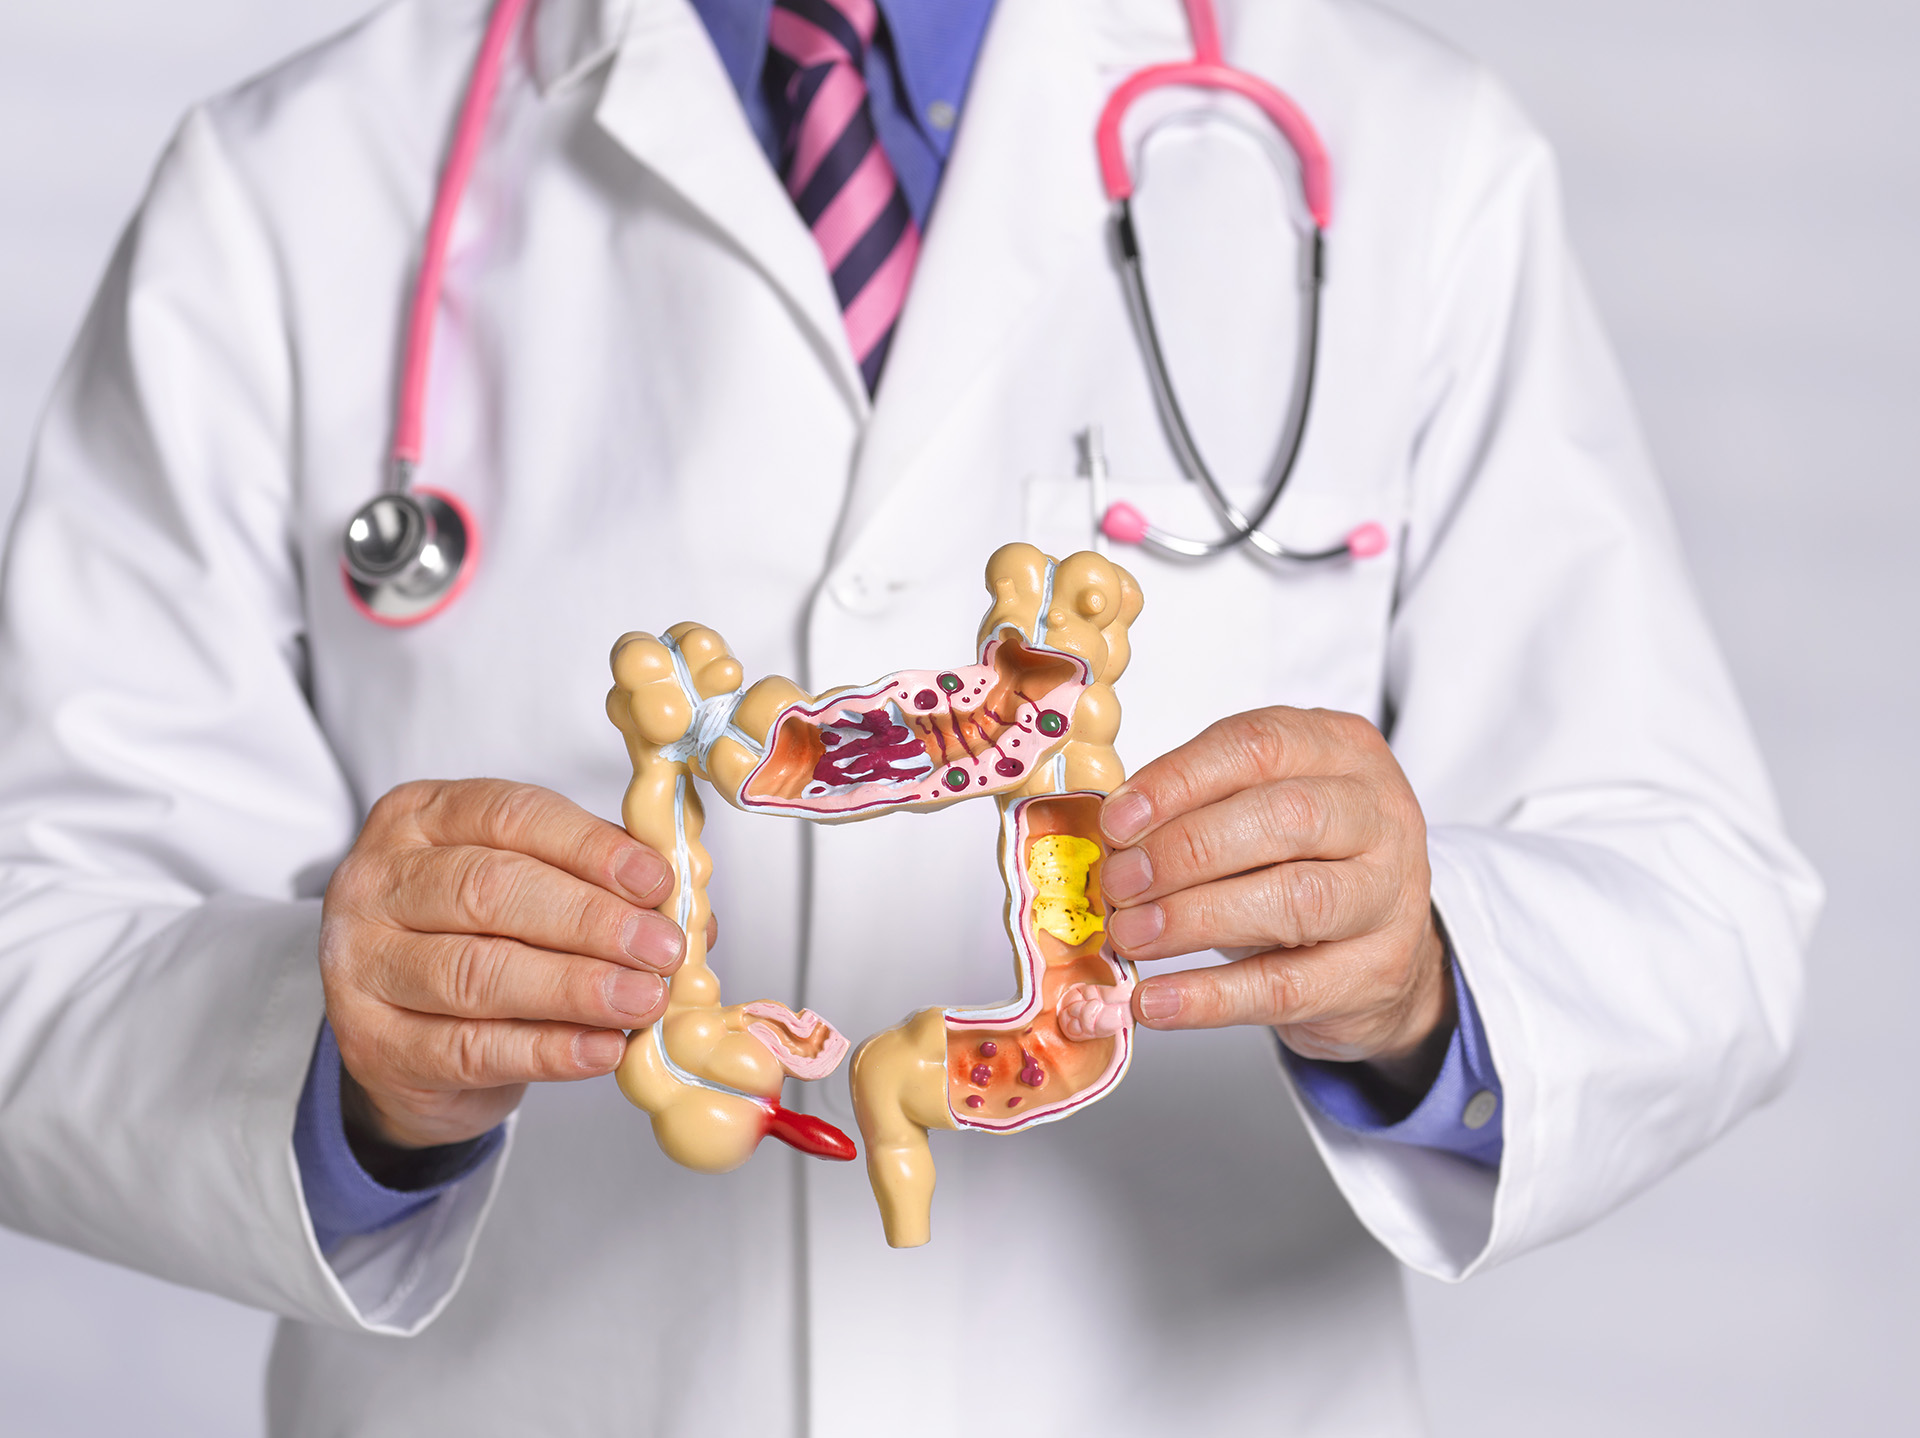 El cáncer de colon es prevenible, ya que detectado a tiempo, puede curarse en el 90% de los casos (Getty Images)
